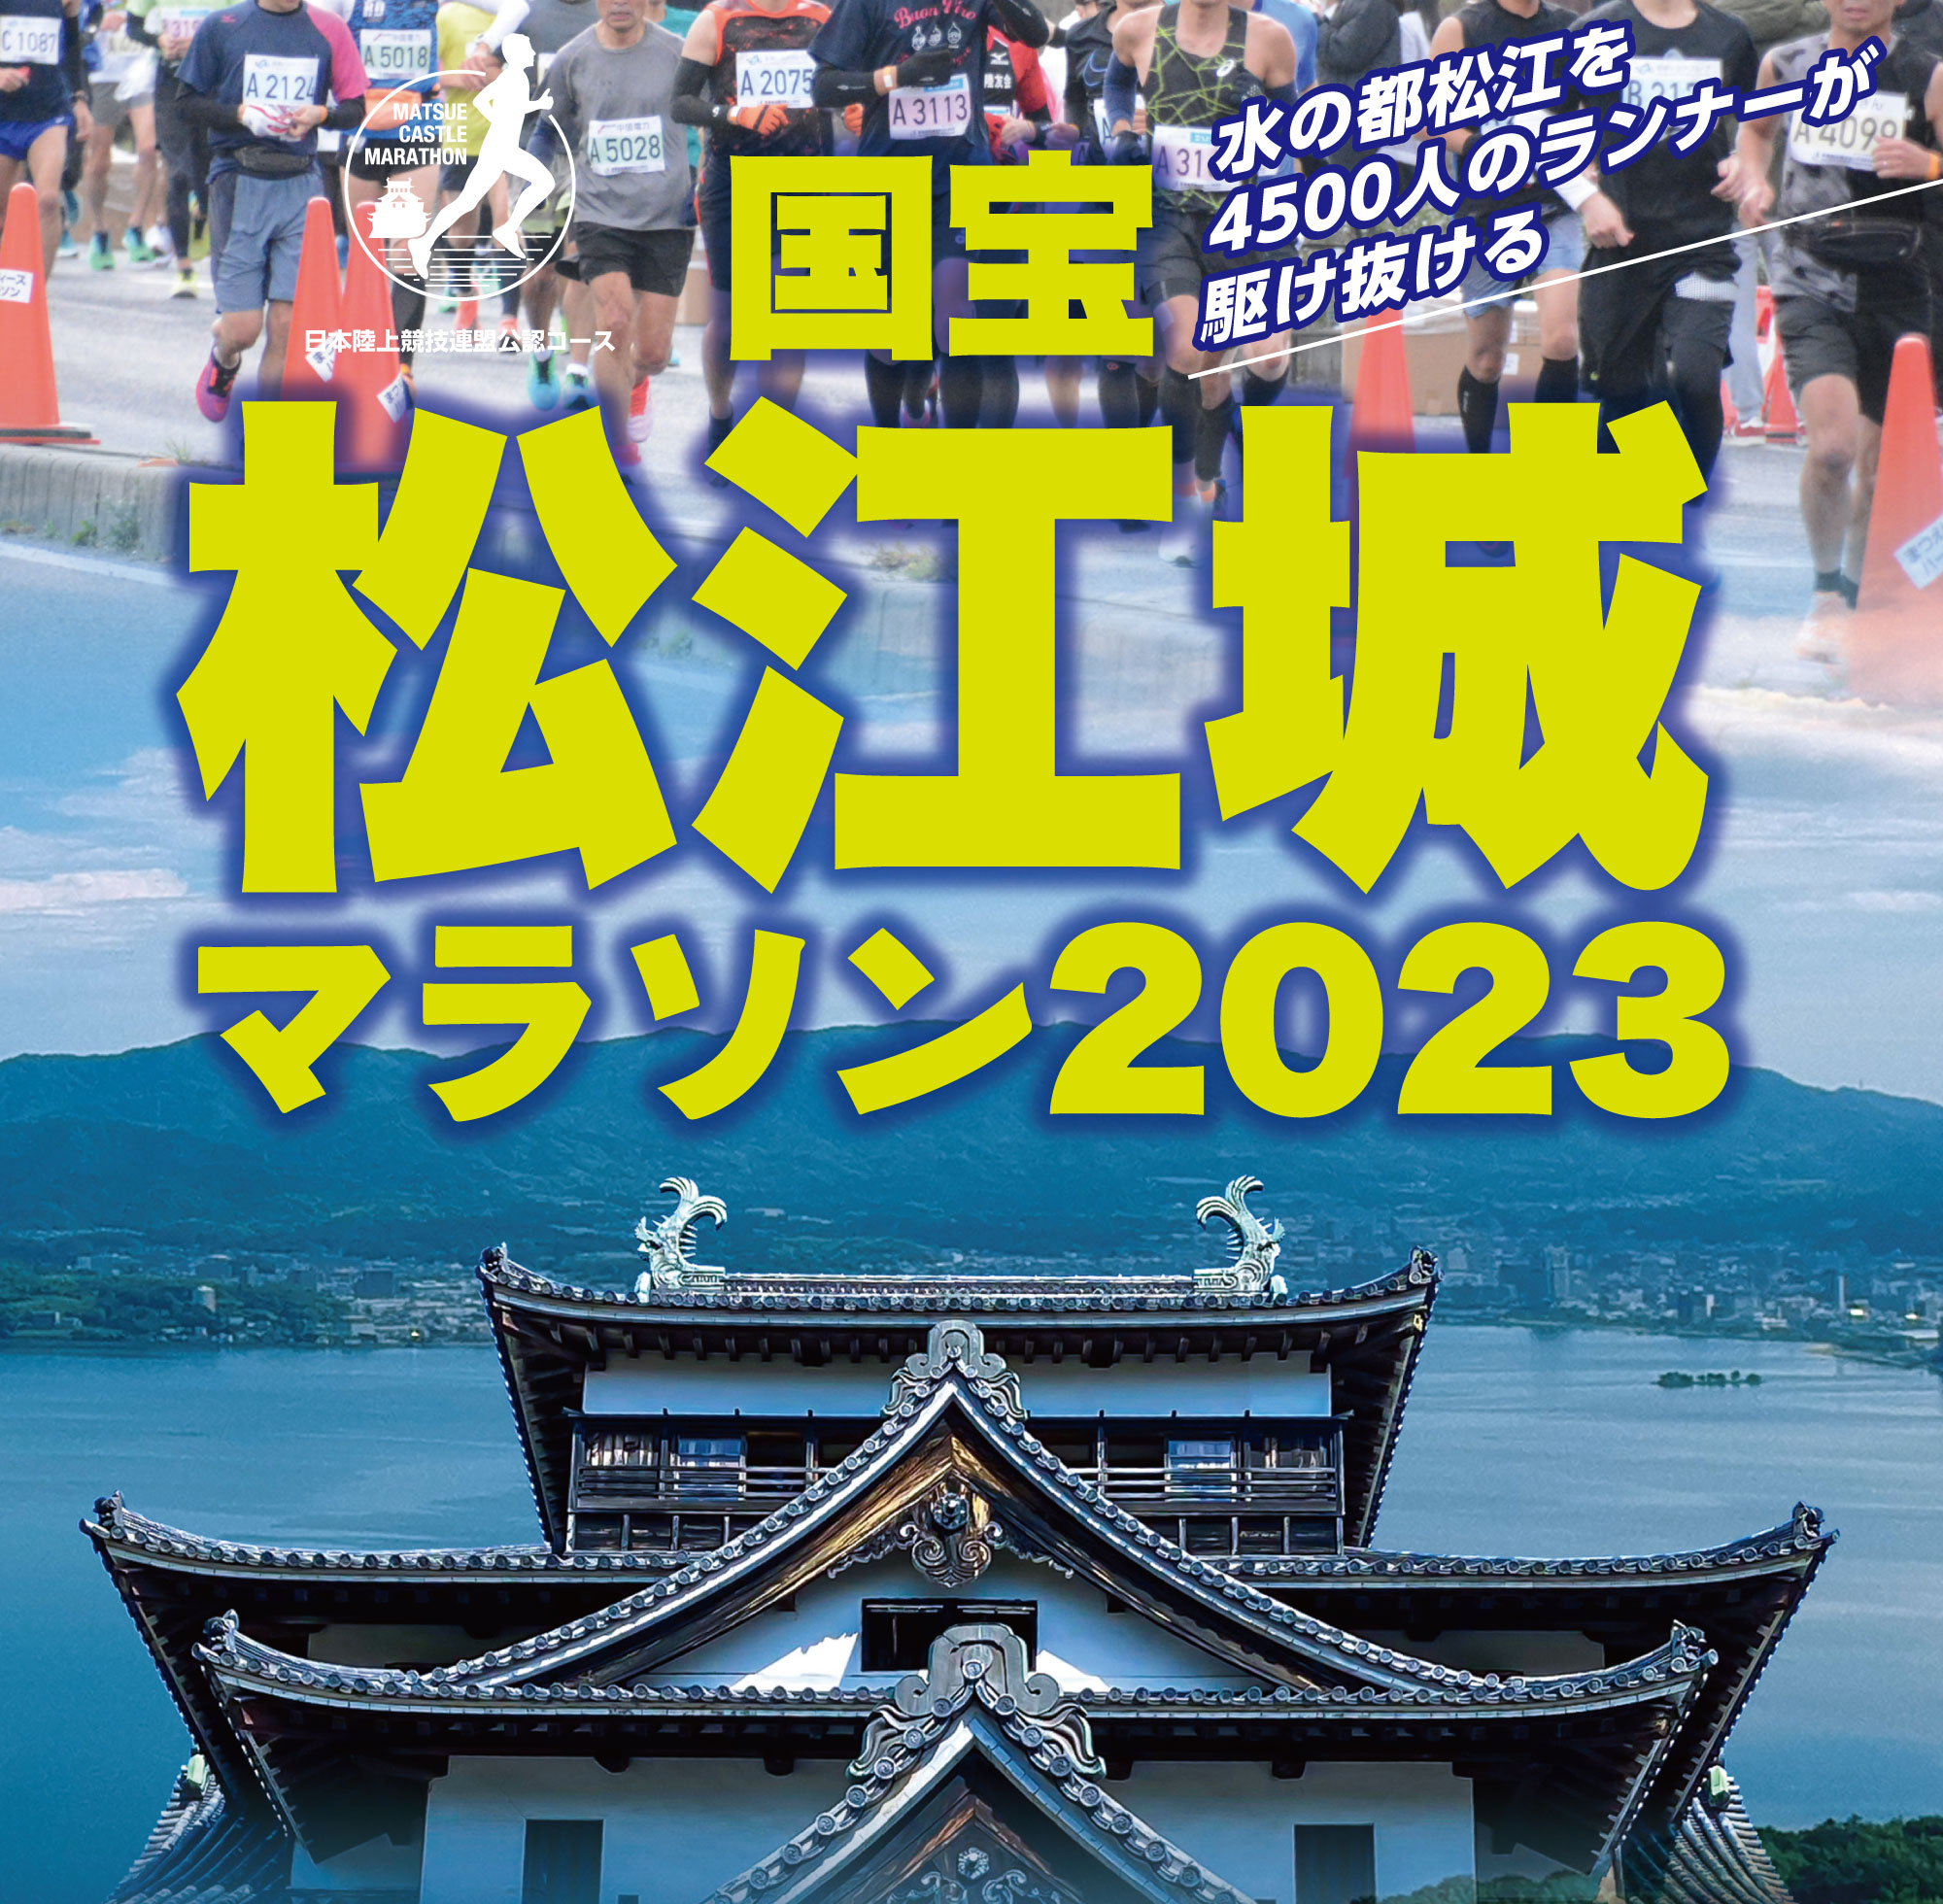 国宝松江城マラソン 2023 | 水の都を4500人のランナーが駆け抜ける